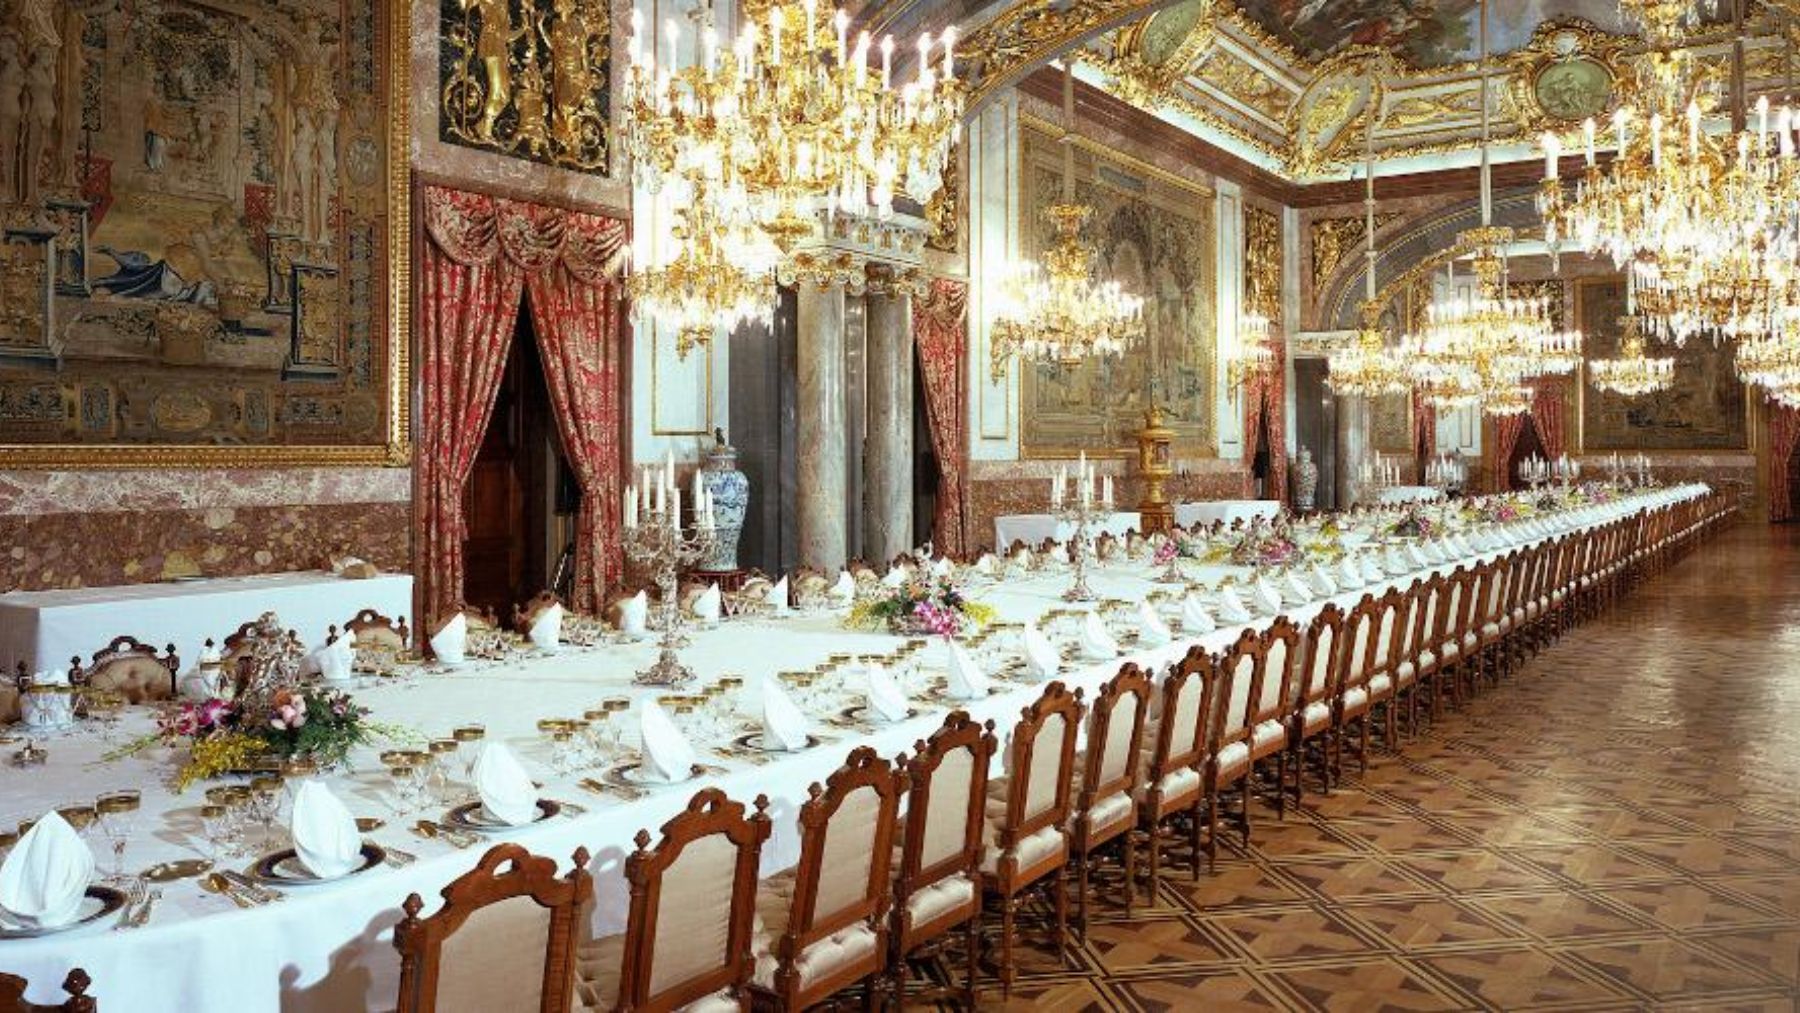 Царская форум. Королевский обеденный зал. Зал для обеда во Дворце. Сервировка в испанском королевском Дворце.